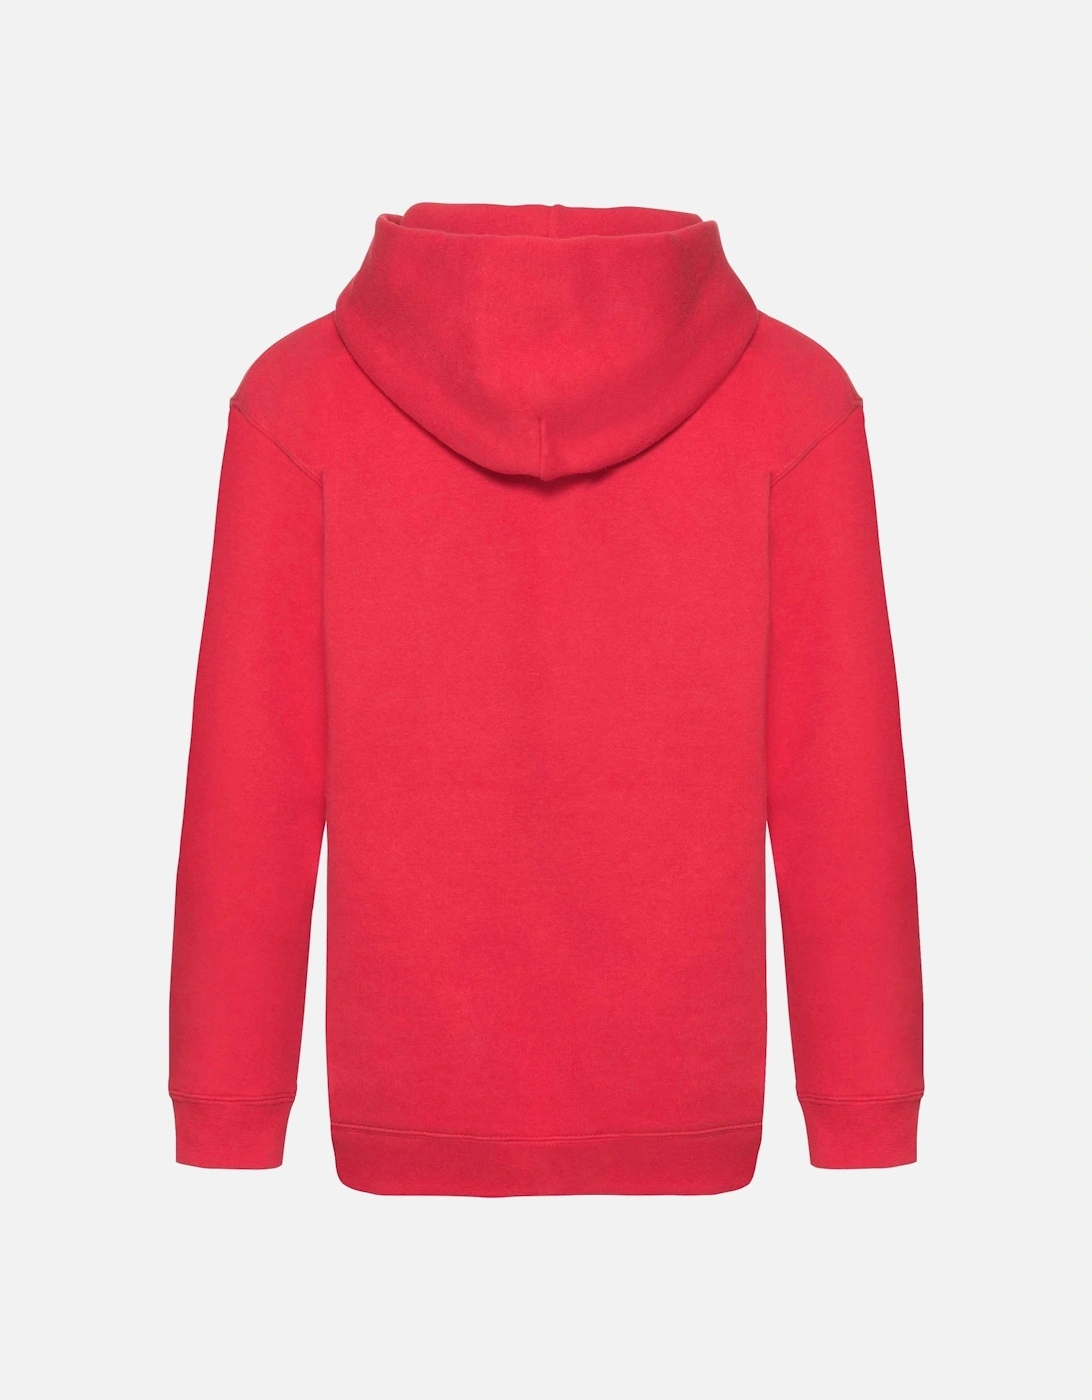 Kids Unisex Premium 70/30 Hooded Sweatshirt / Hoodie, 5 of 4